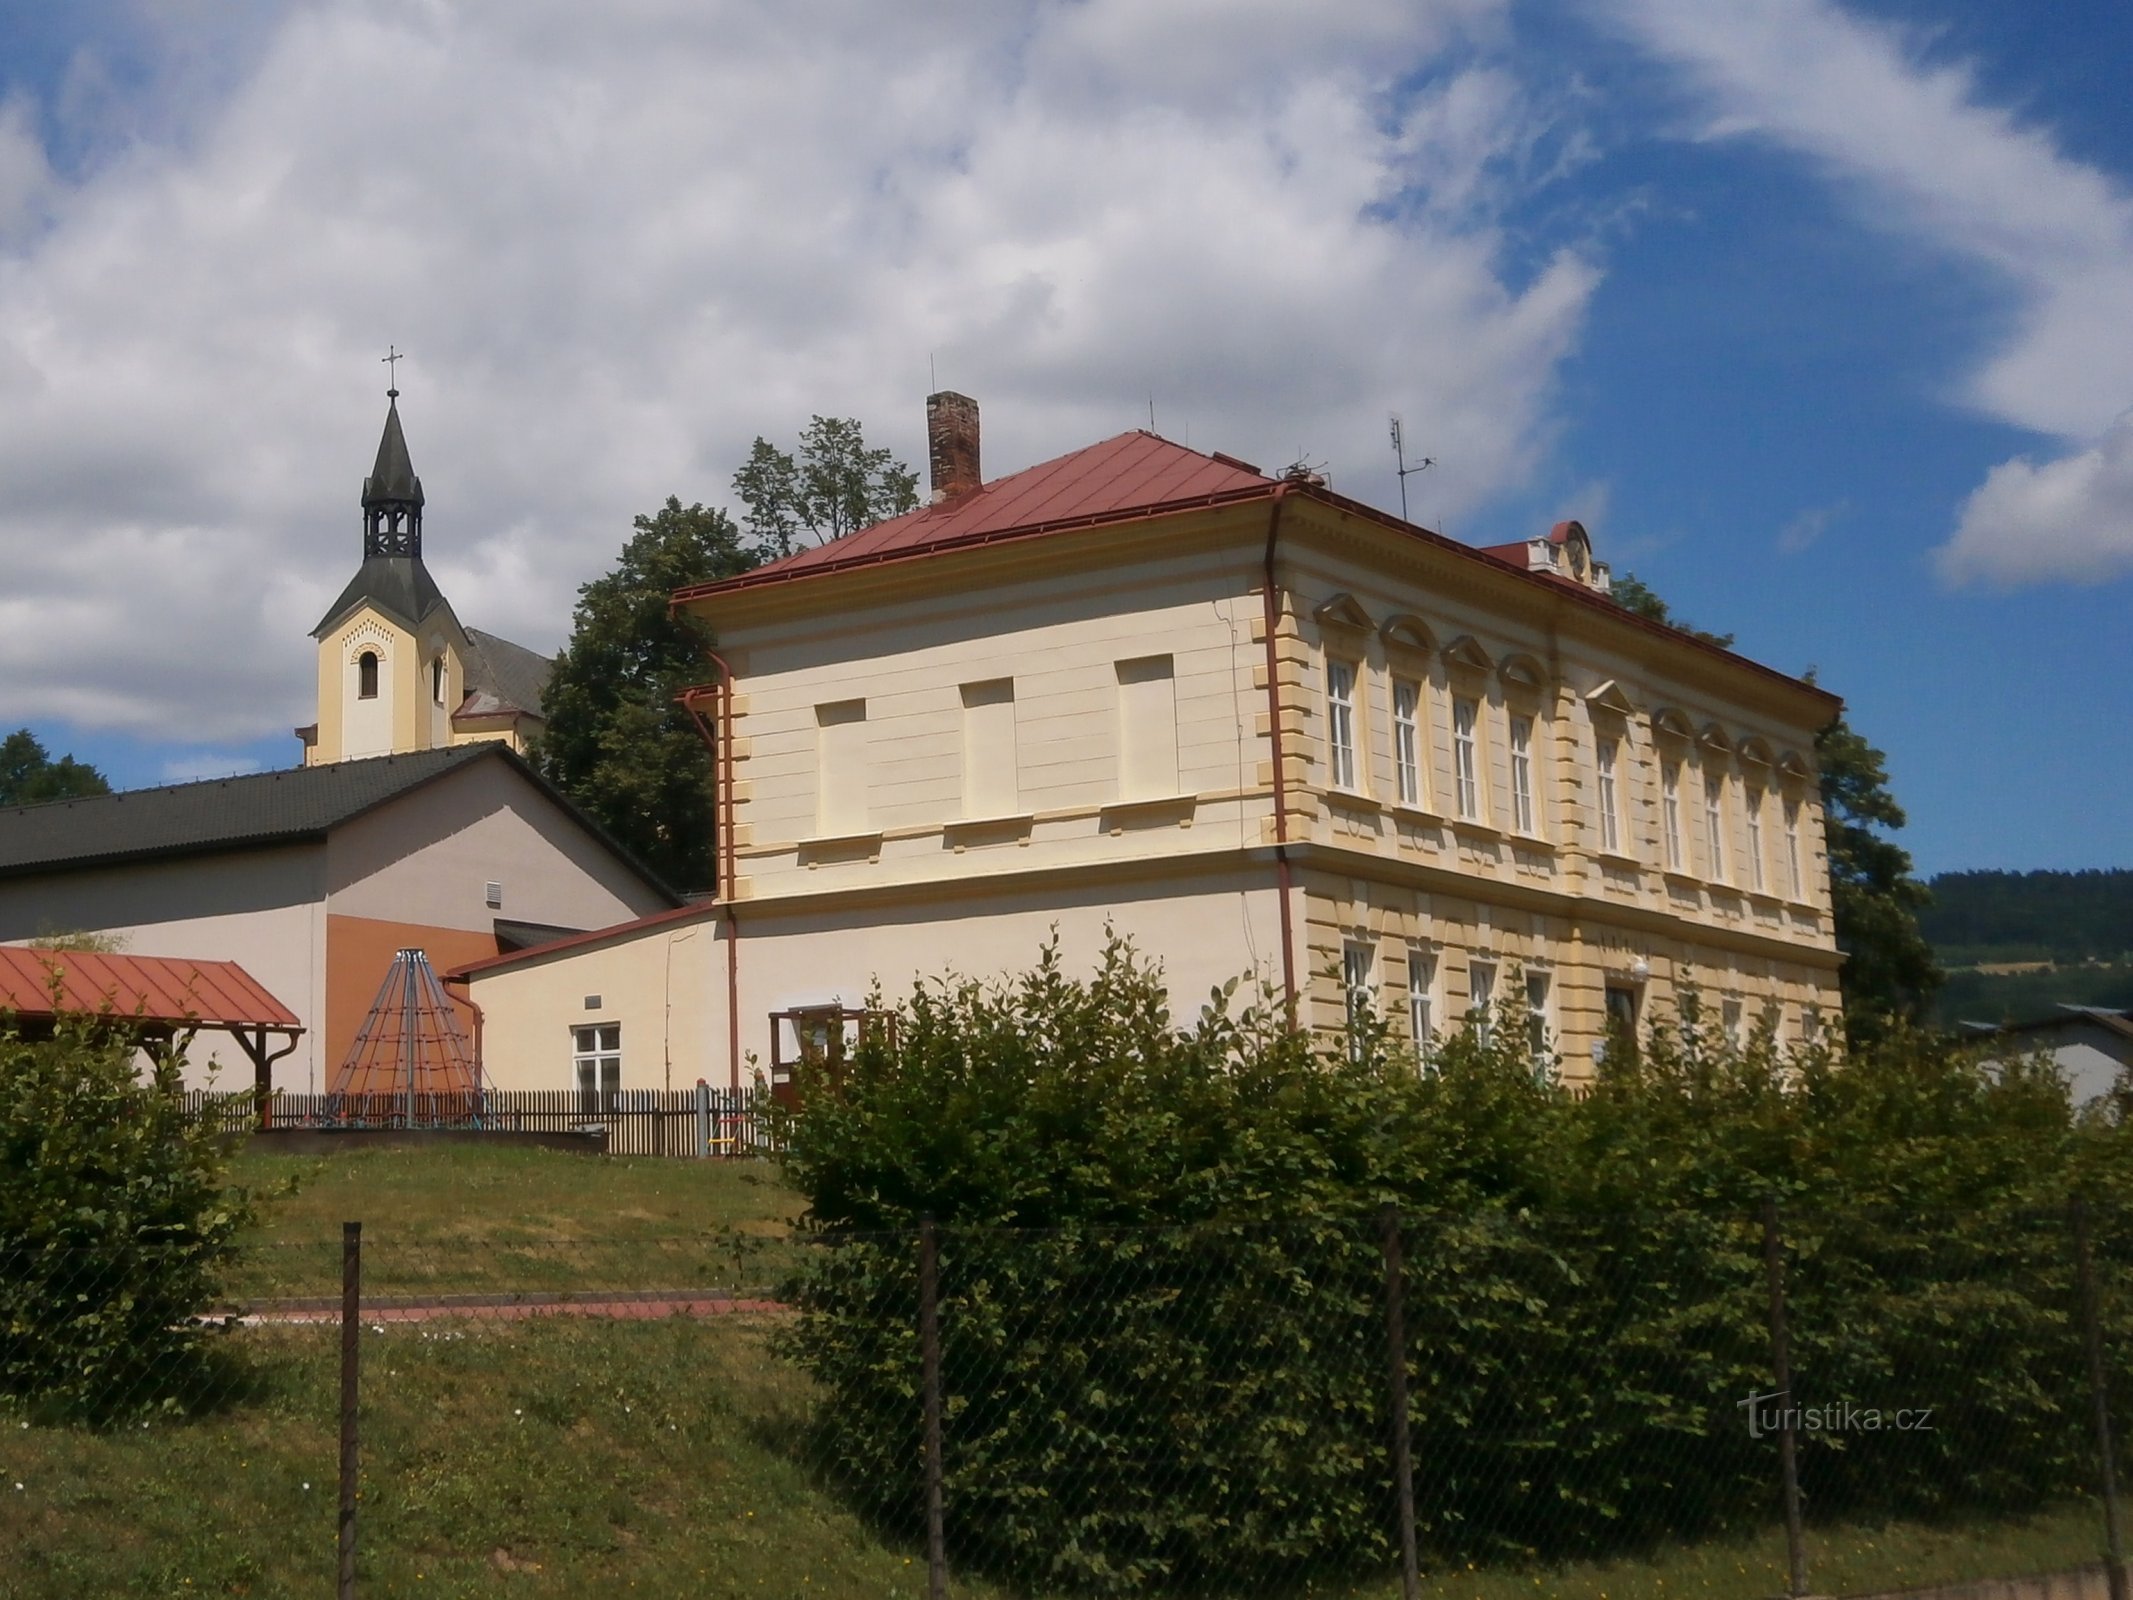 Trường học với nền nhà thờ (Batňovice, ngày 3.7.2017 tháng XNUMX năm XNUMX)